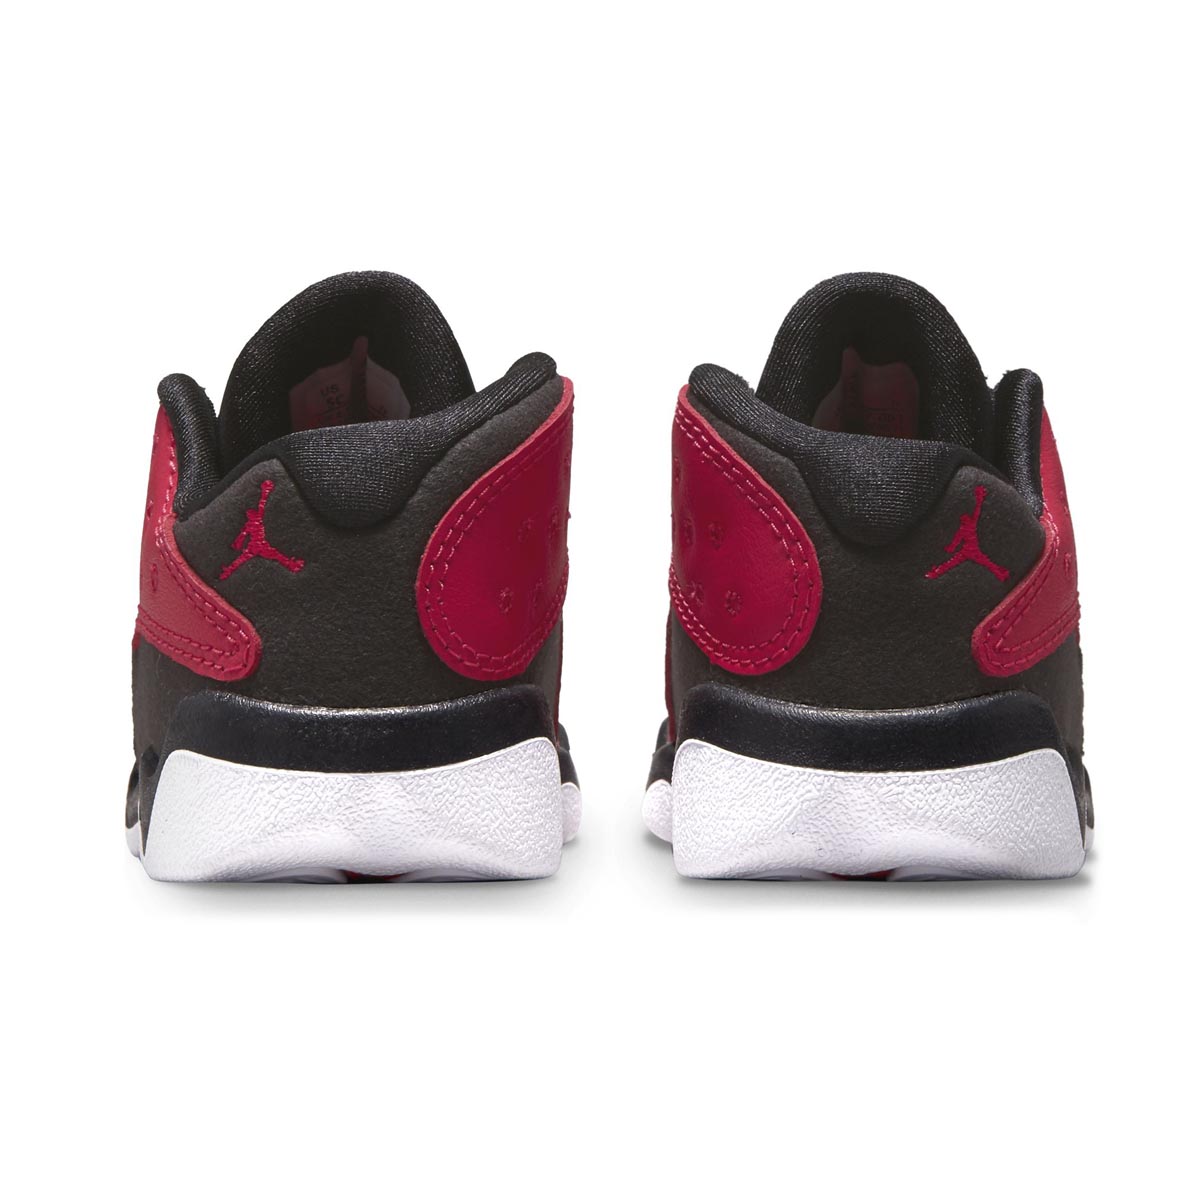 Air Jordan 13 Retro Low Baby/Toddler Shoes